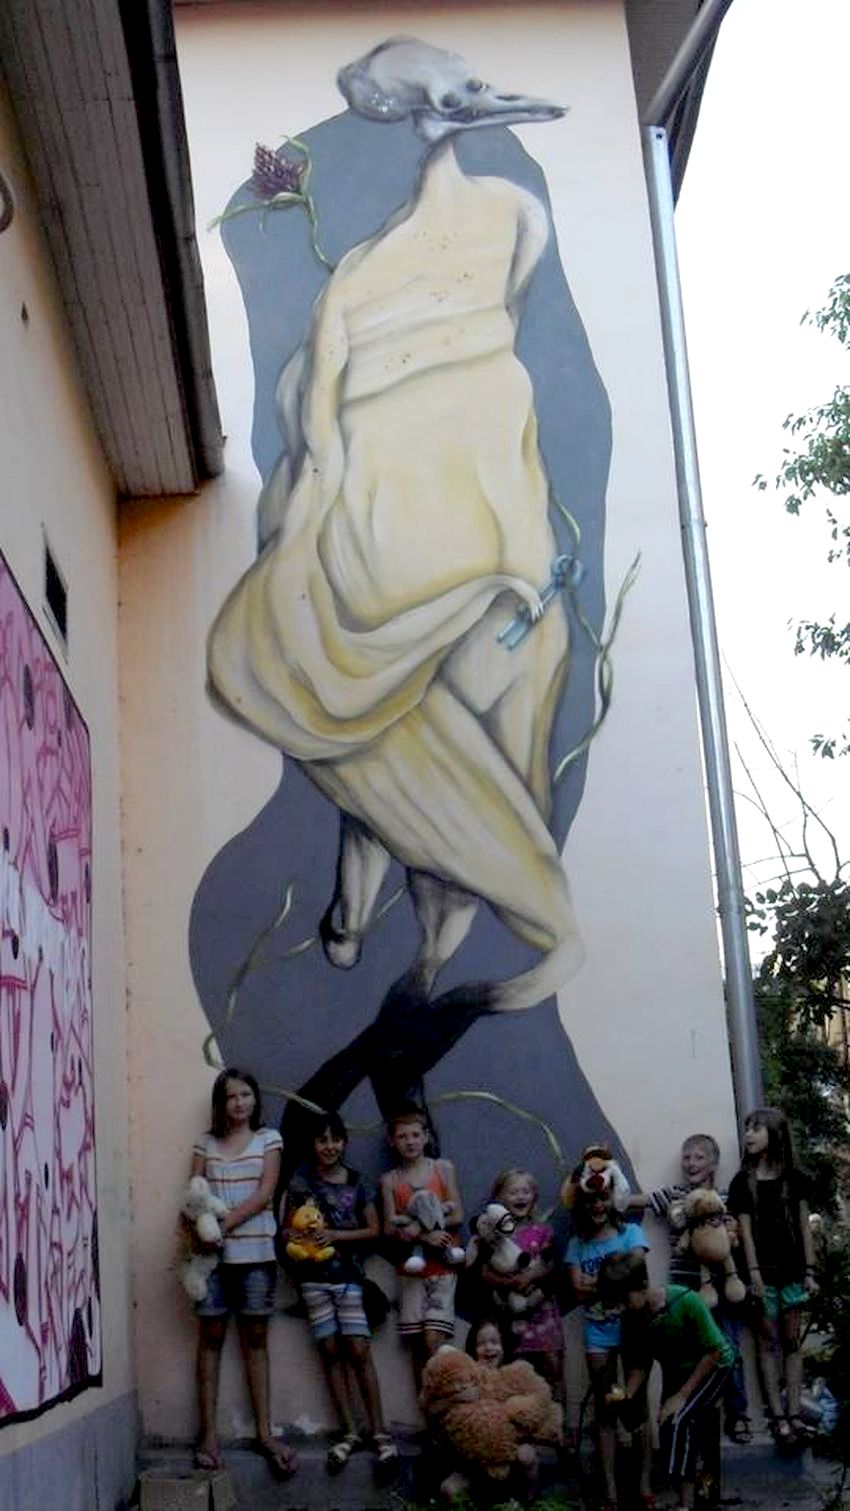 Местные жители жалуются на непристойное граффити в центре Житомира. ФОТО